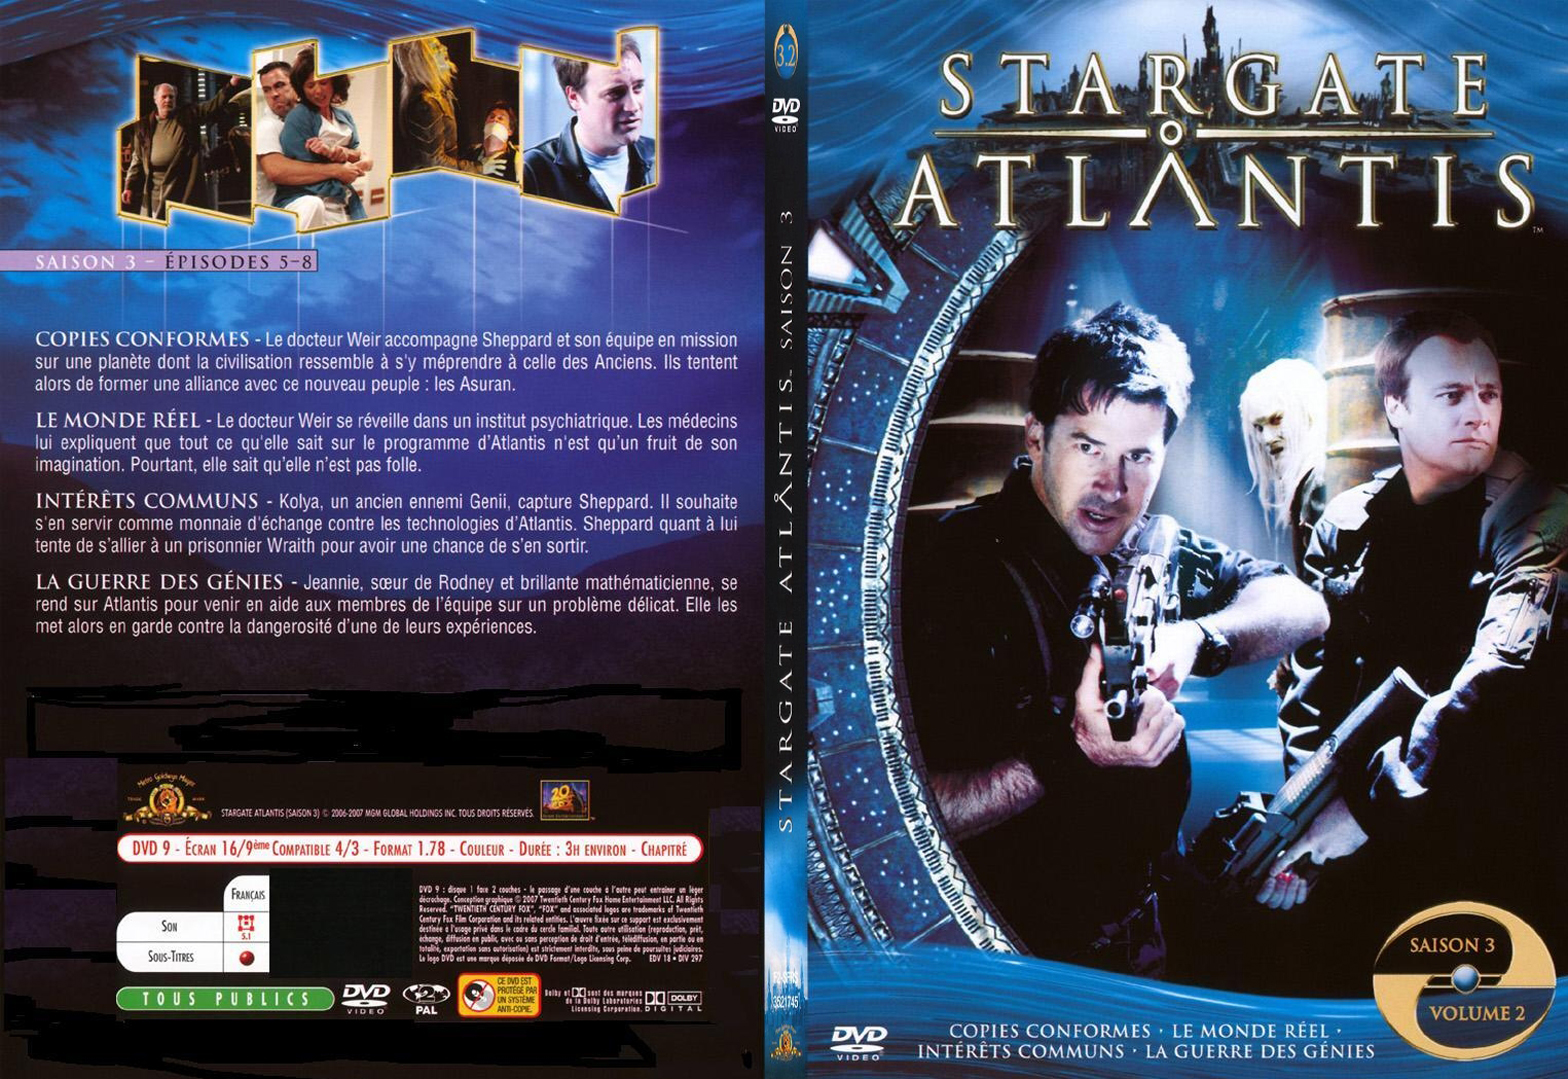 Jaquette DVD Stargate Atlantis saison 3 vol 2 - SLIM